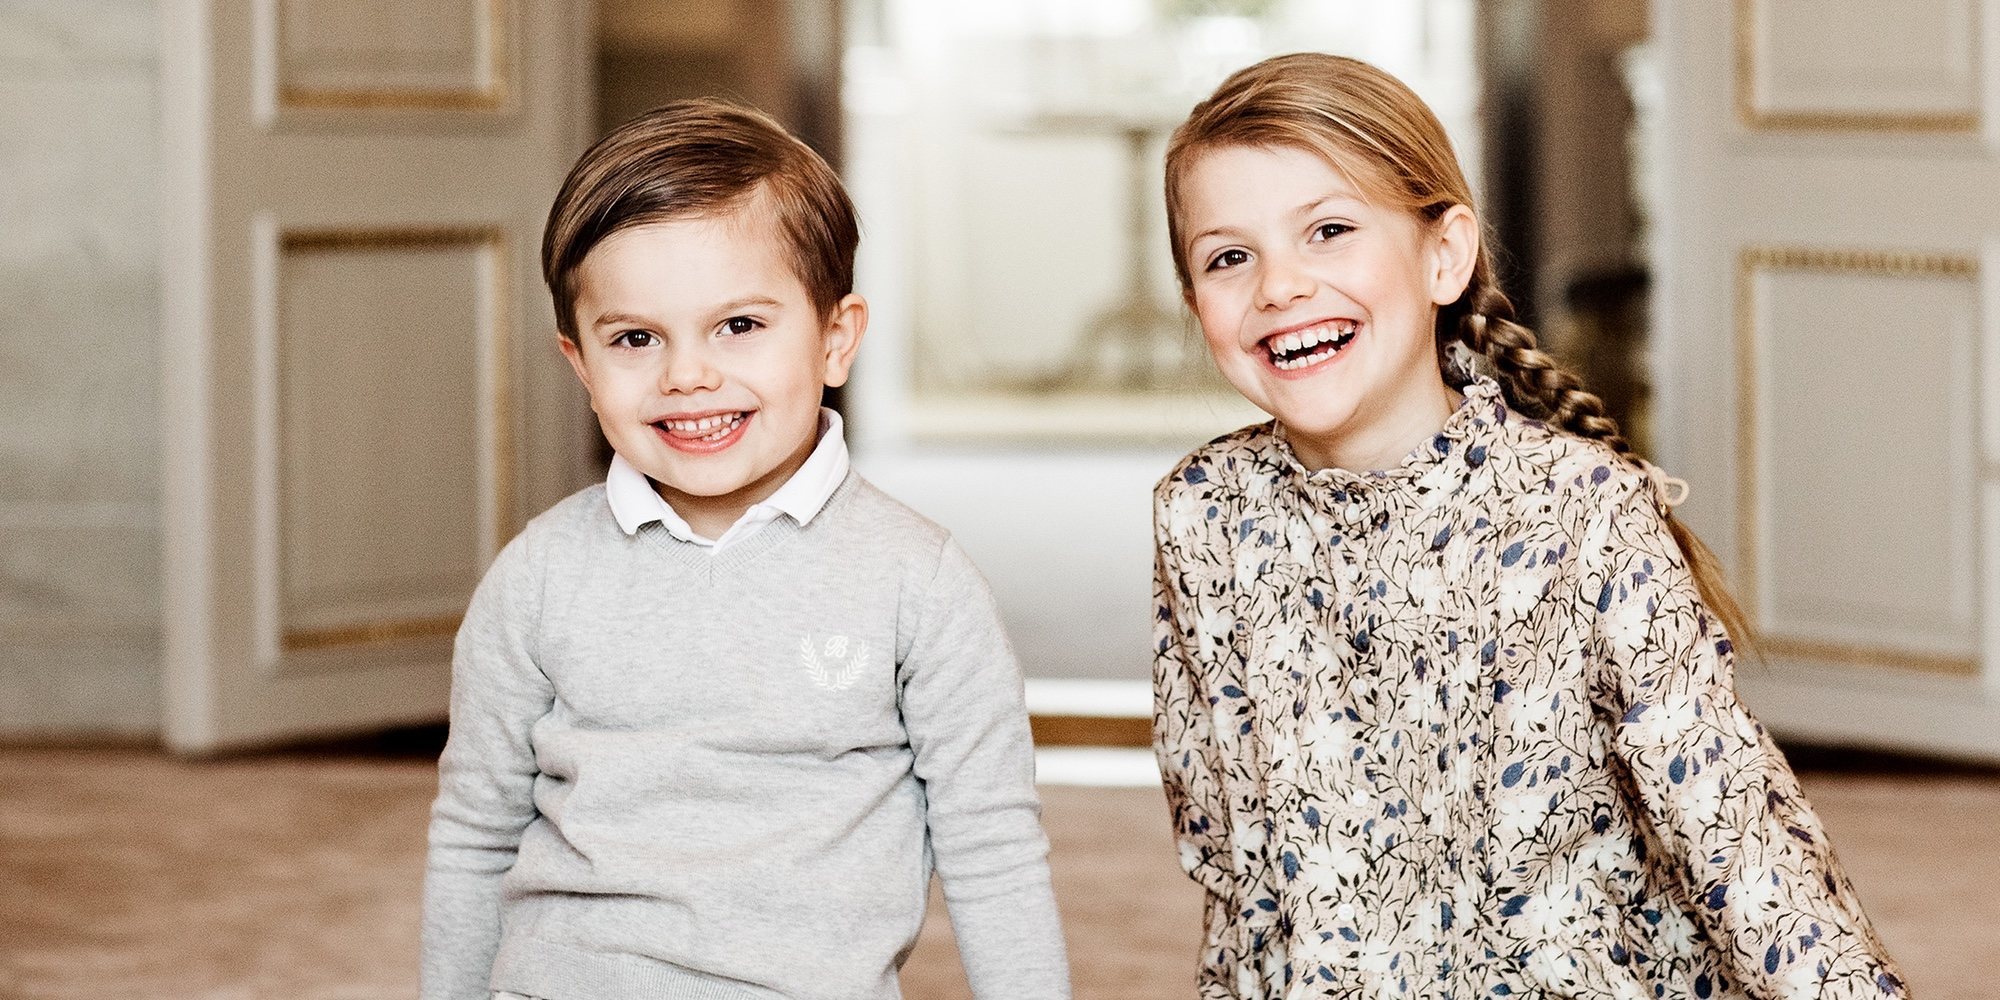 La Casa Real Sueca publica nuevas fotografías de Estela de Suecia coincidiendo con su octavo cumpleaños